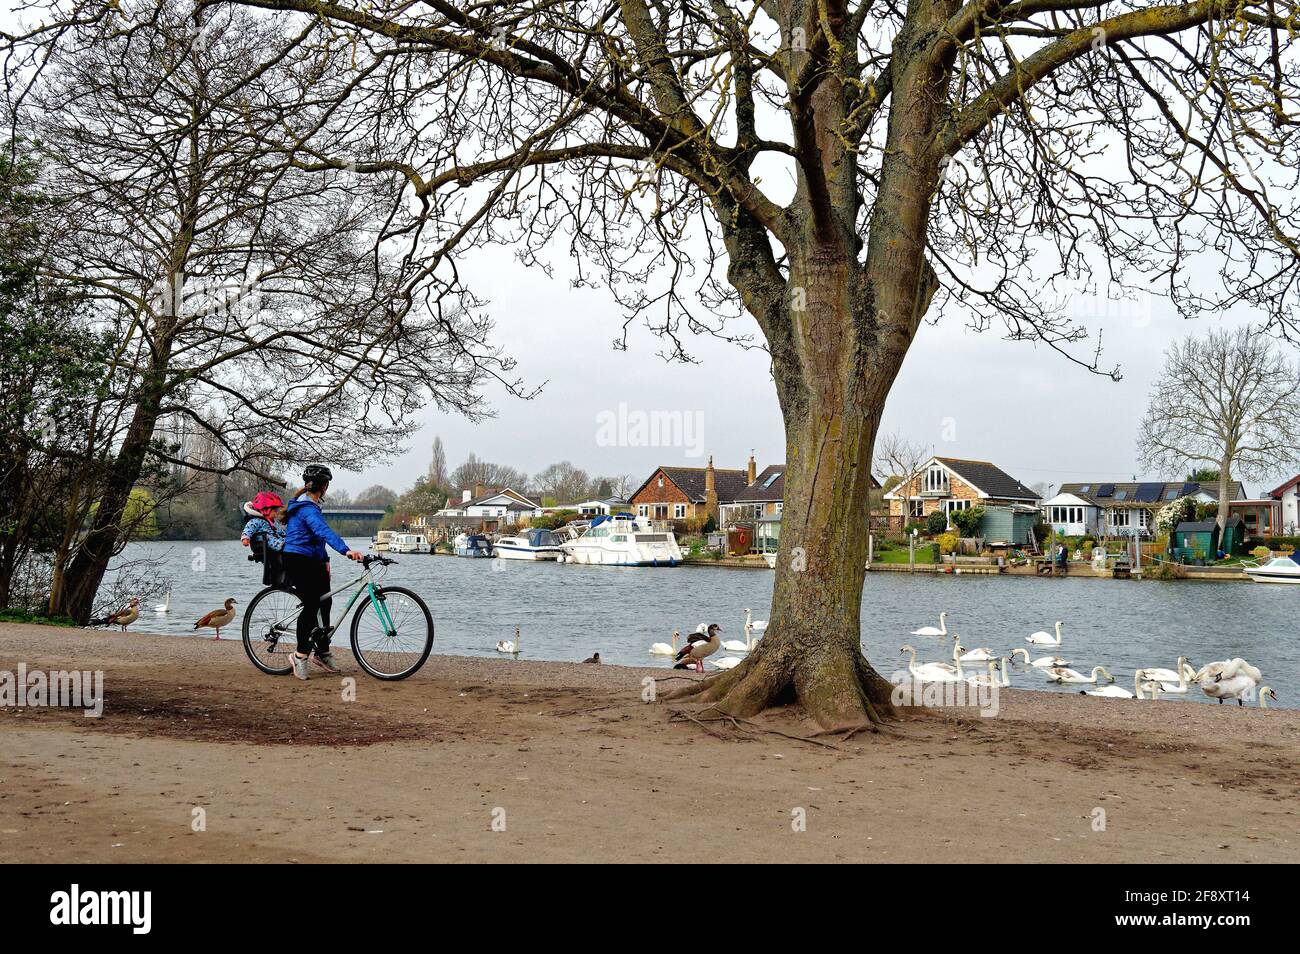 Eine junge Mutter auf dem Fahrrad mit einem Kind, das auf einem Fahrradsitz sitzt und die Schwäne am Flussufer in Walton auf der Themse, Surrey, England, betrachtet Stockfoto